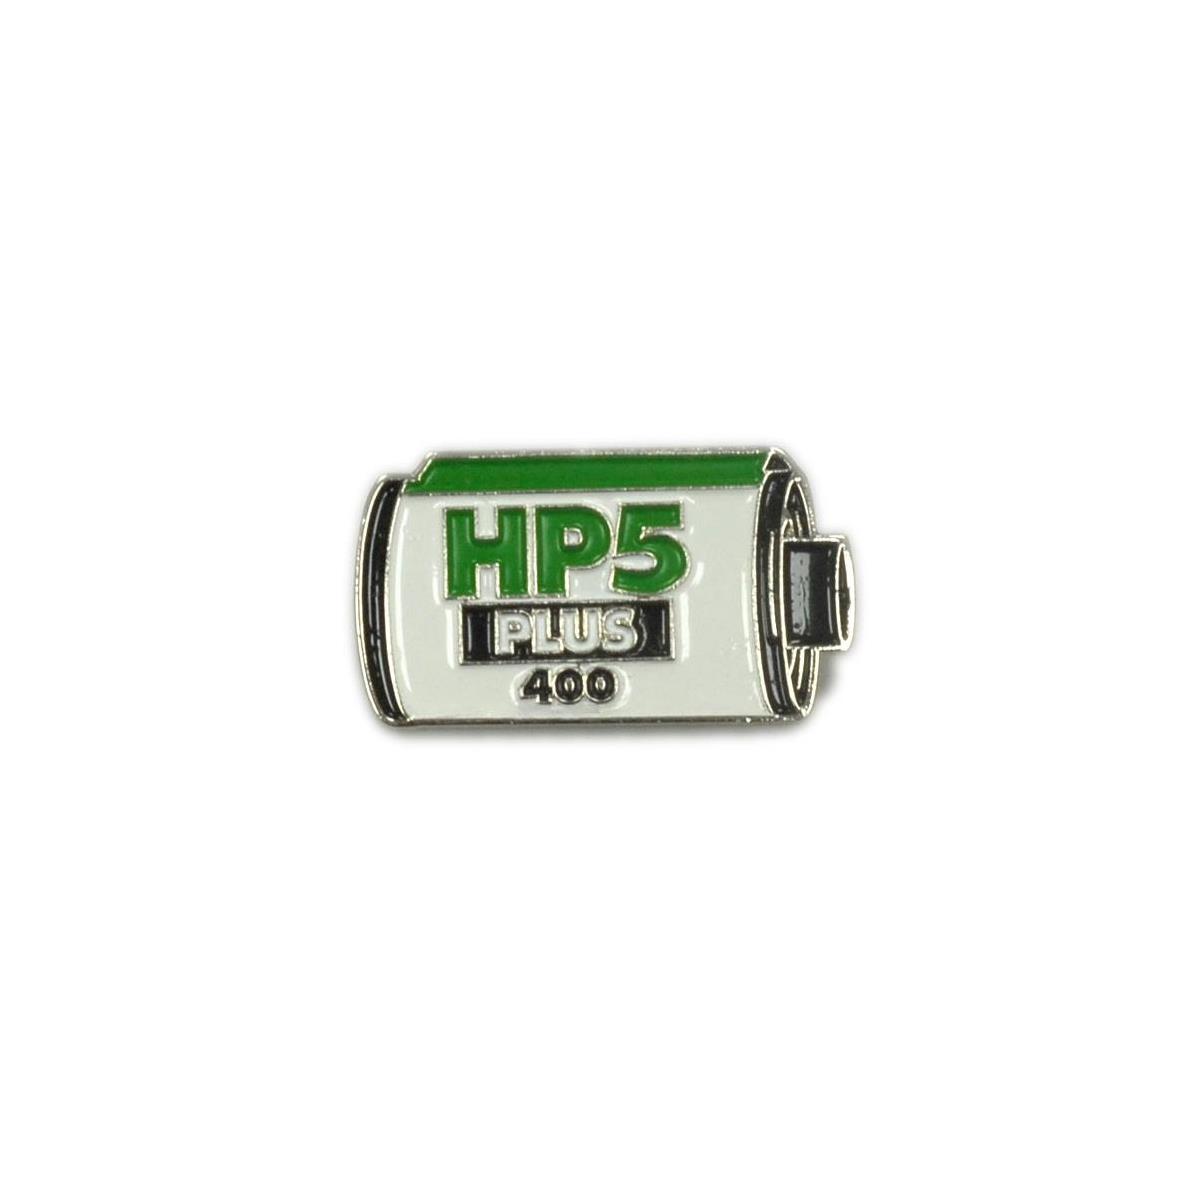 Image of Ilford HP5 Plus Metal Pin Badge